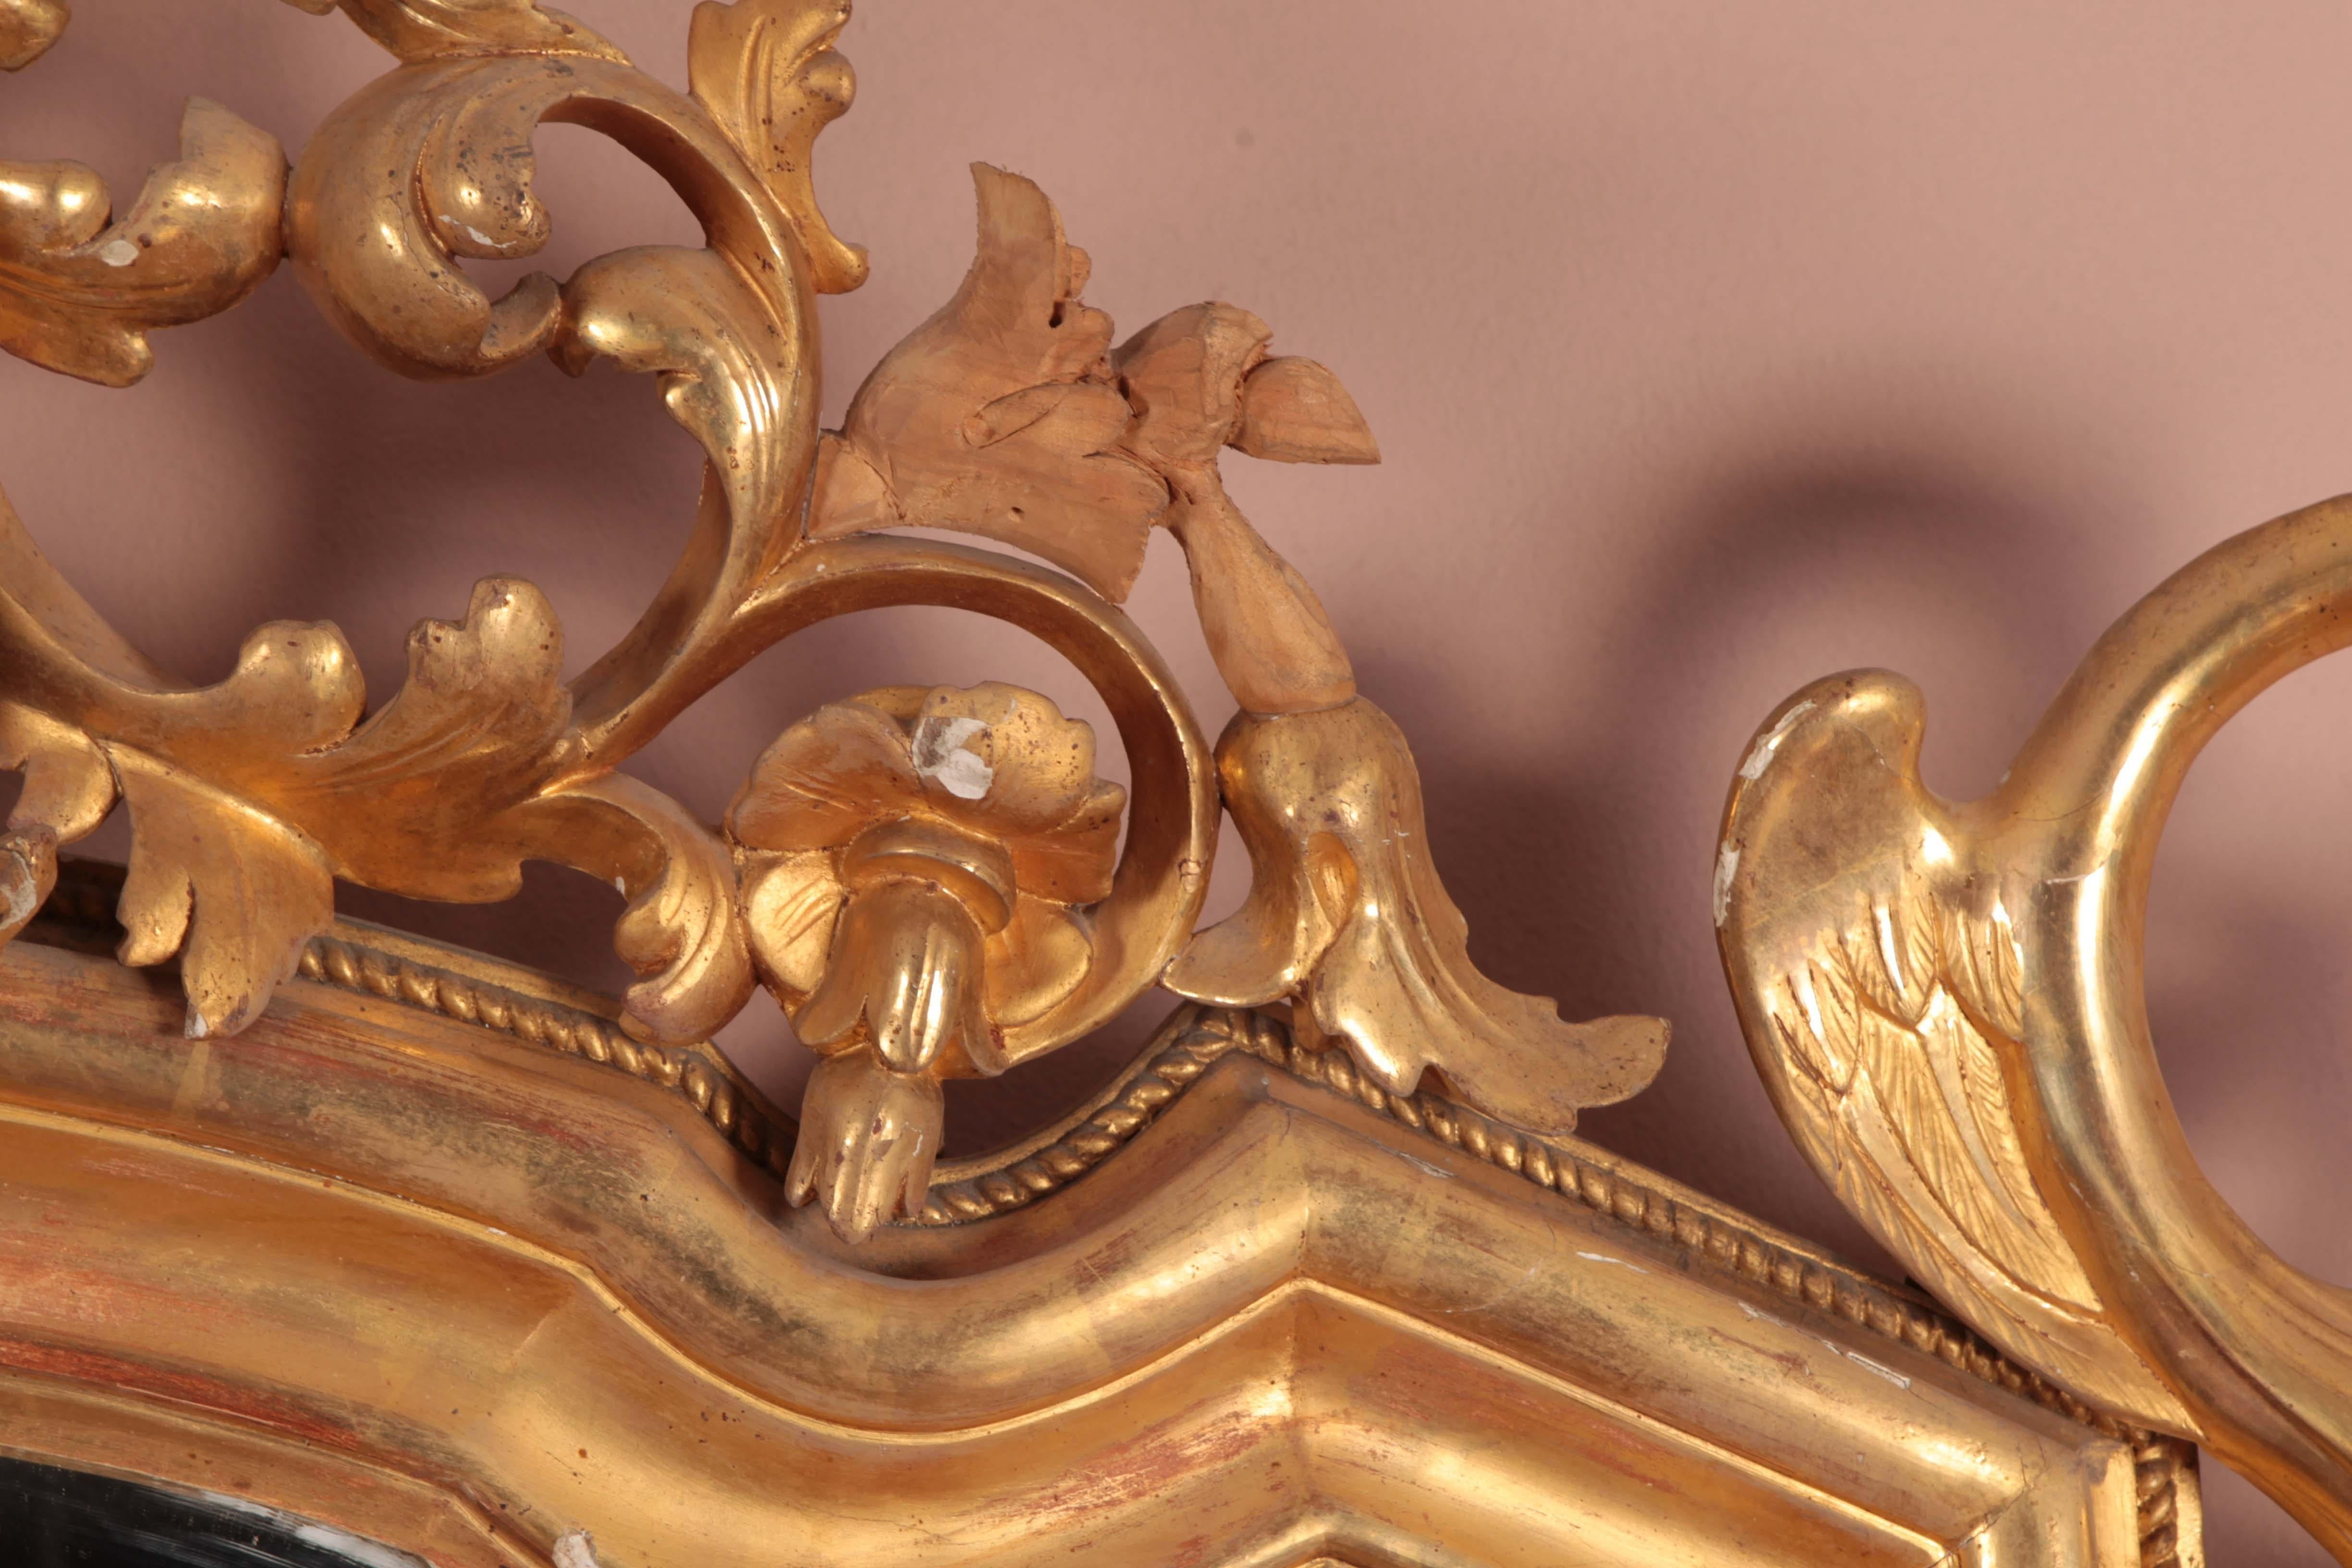 Paire de splendides miroirs rectangulaires vénitiens en bois sculpté et doré. La cimaise est très riche, ornée de motifs végétaux entre lesquels siège un putto, tandis que les angles inférieurs sont sculptés d'un motif animalier